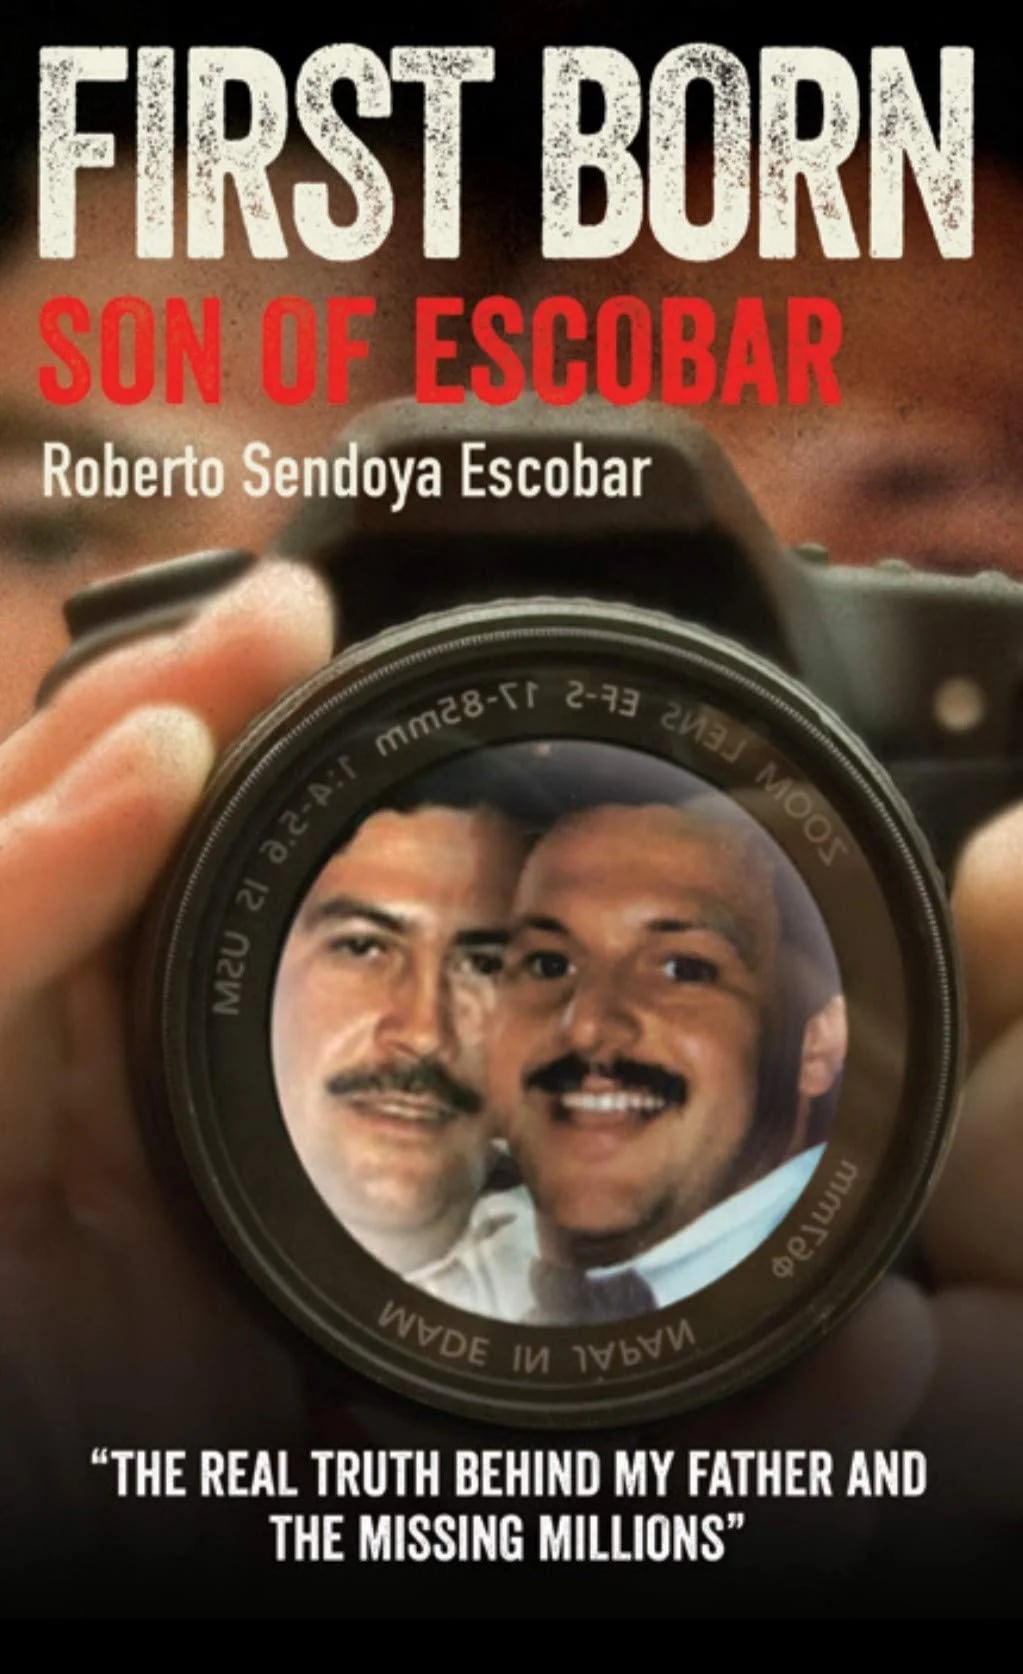 Portada del libro donde el supuesto primogénito de Pablo Escobar cuenta la historia de su vida, la cual describe como la "precuela de Narcos".